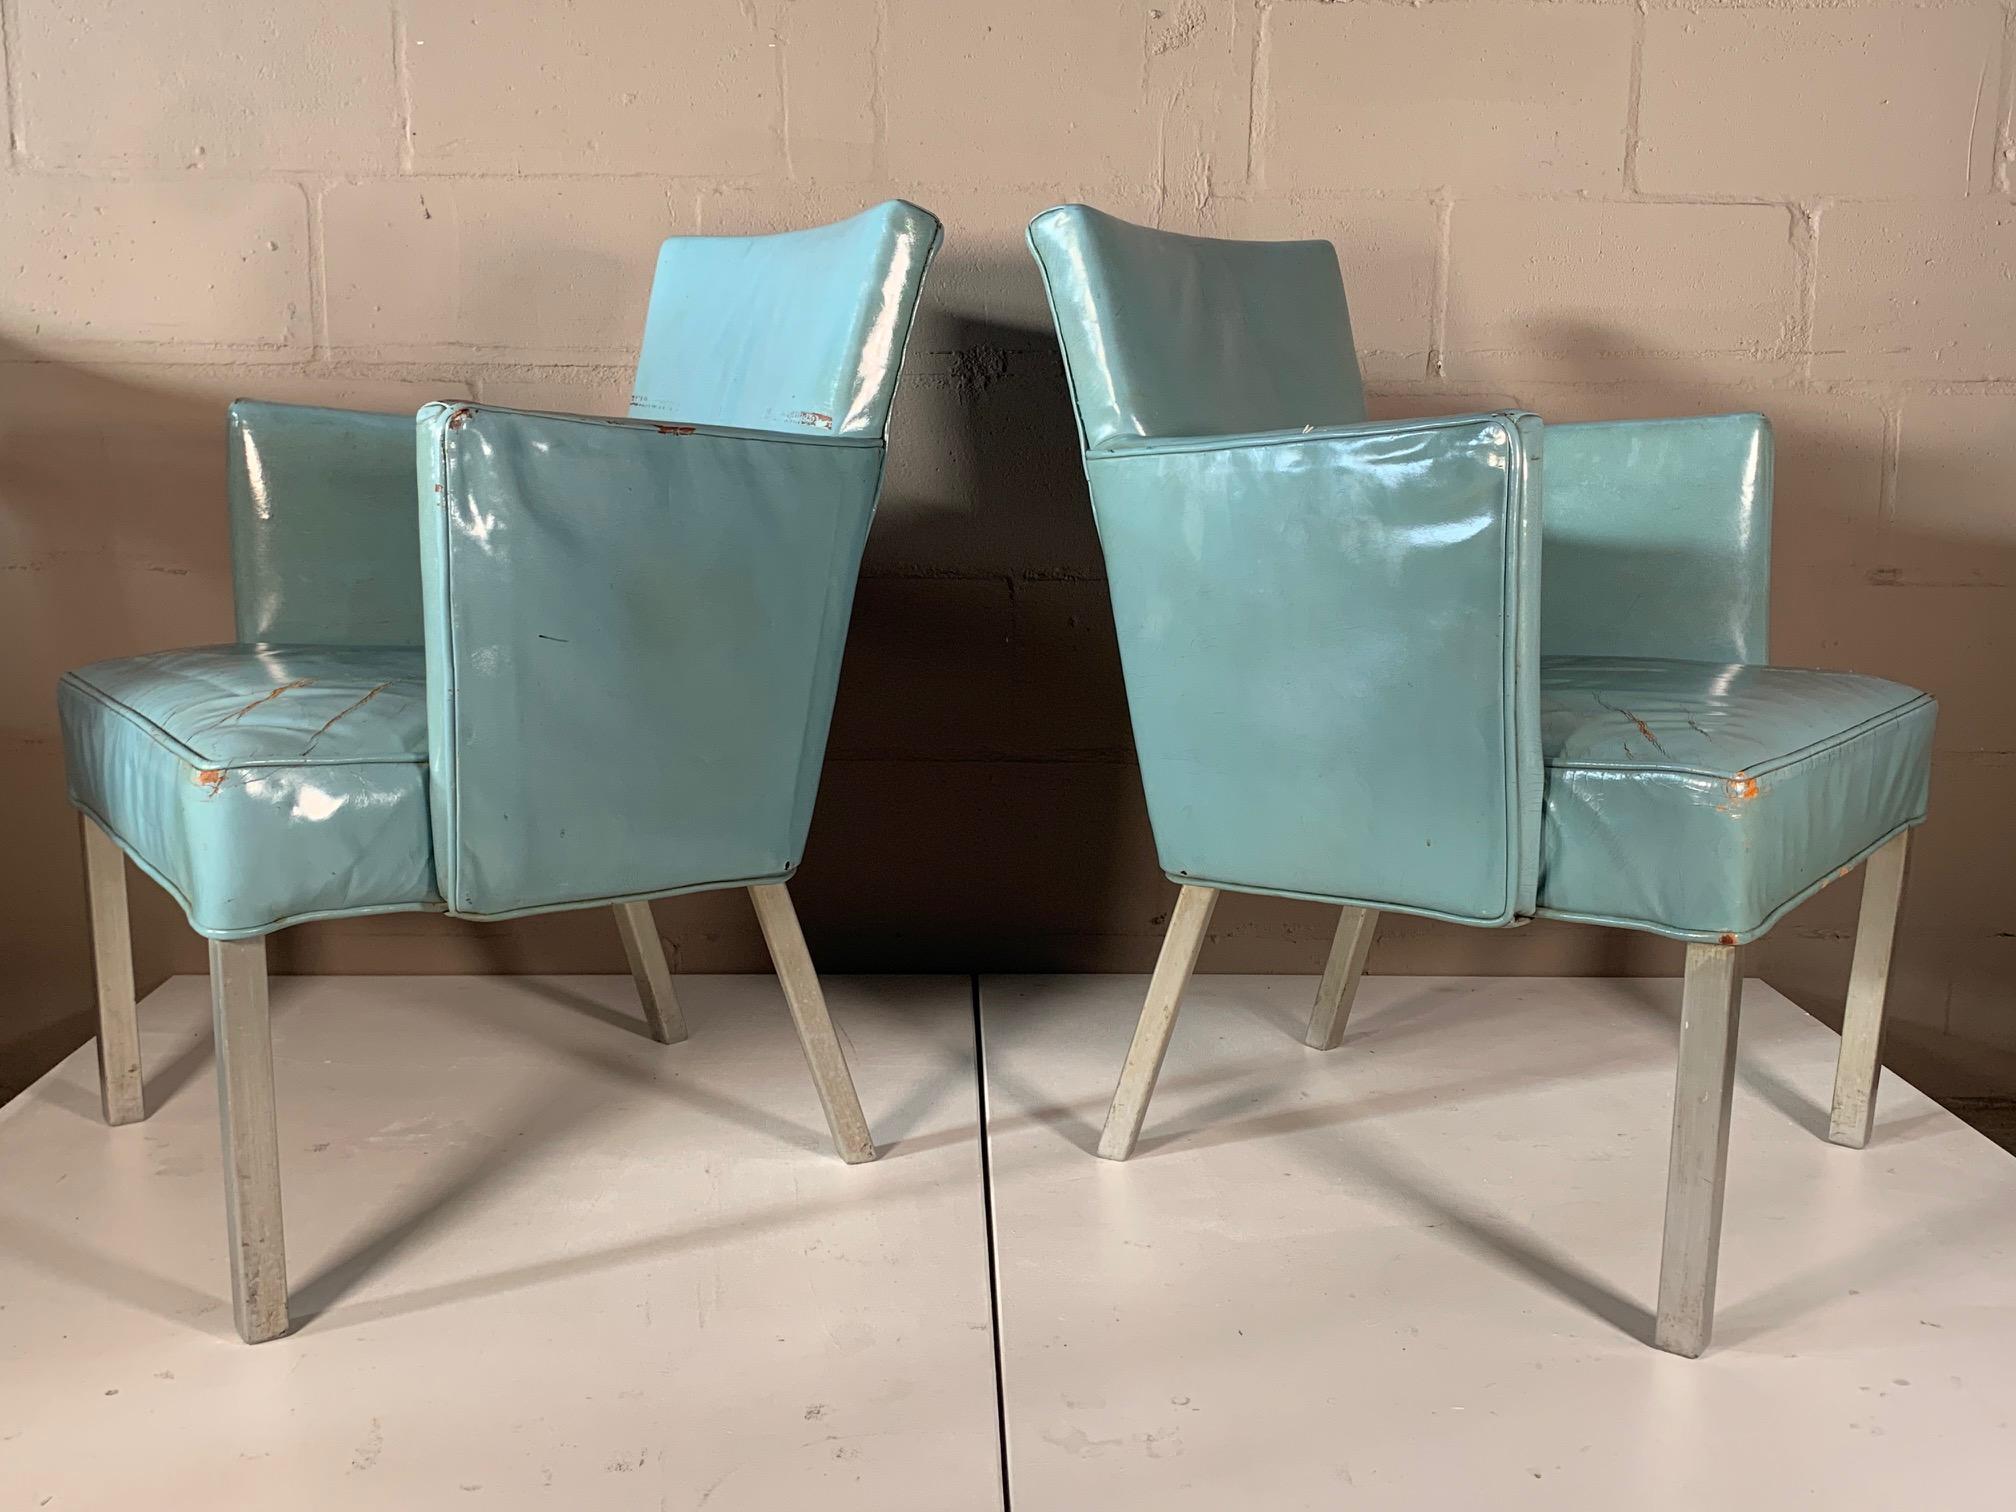 Une paire de fauteuils rares provenant du célèbre paquebot SS United States. Conservant le cuir bleu verni d'origine, pieds en aluminium. Belle patine et rareté historique. 